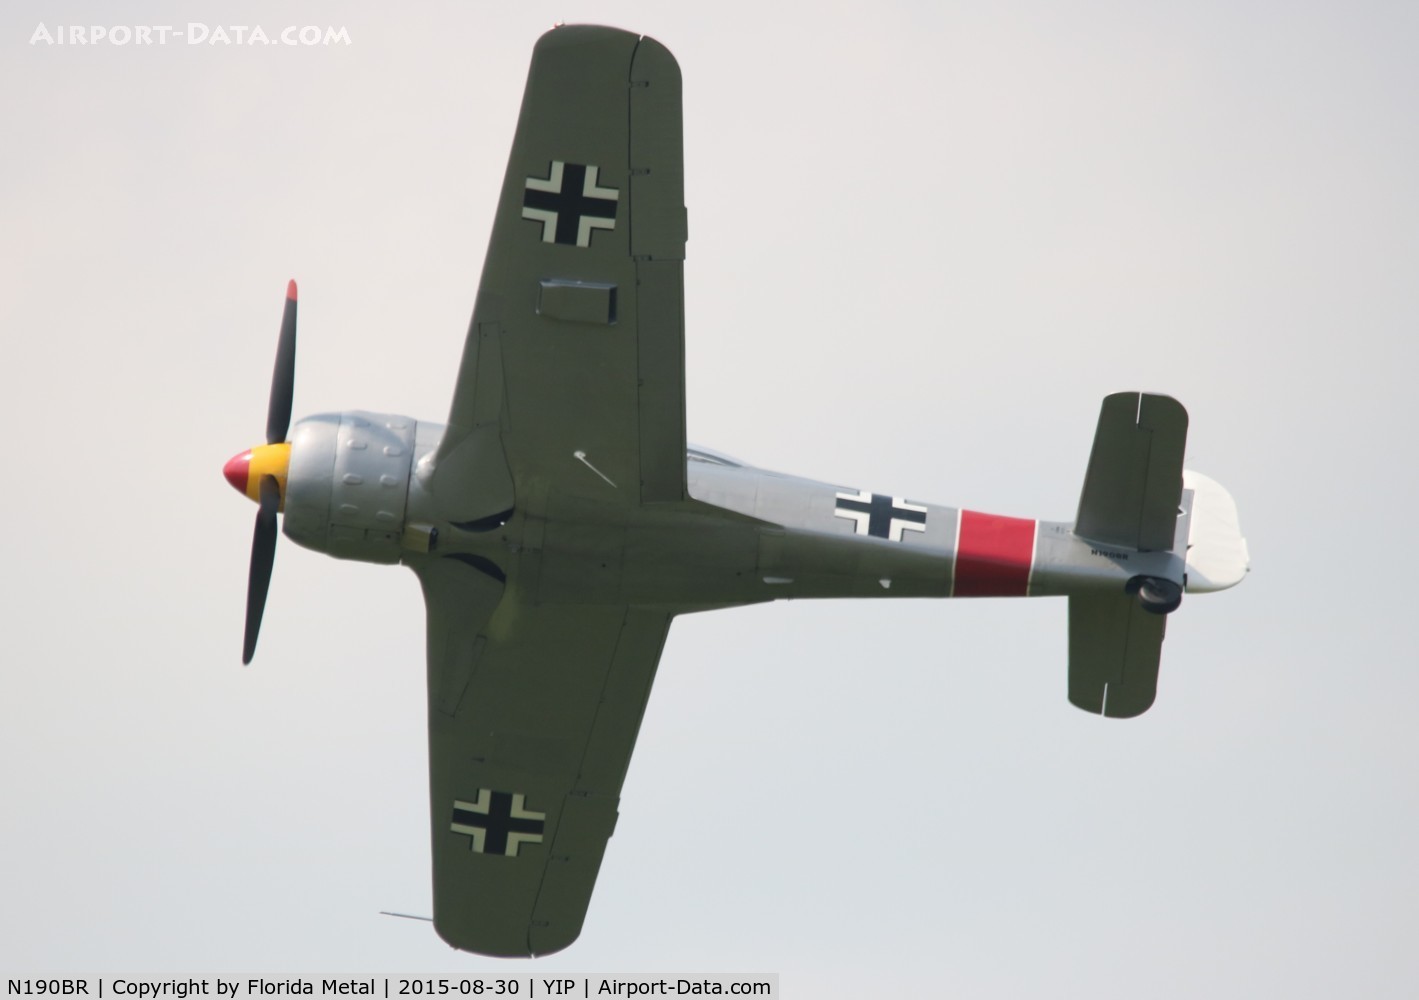 N190BR, Focke-Wulf Fw-190-A8 Replica C/N 005, FW190 Replica